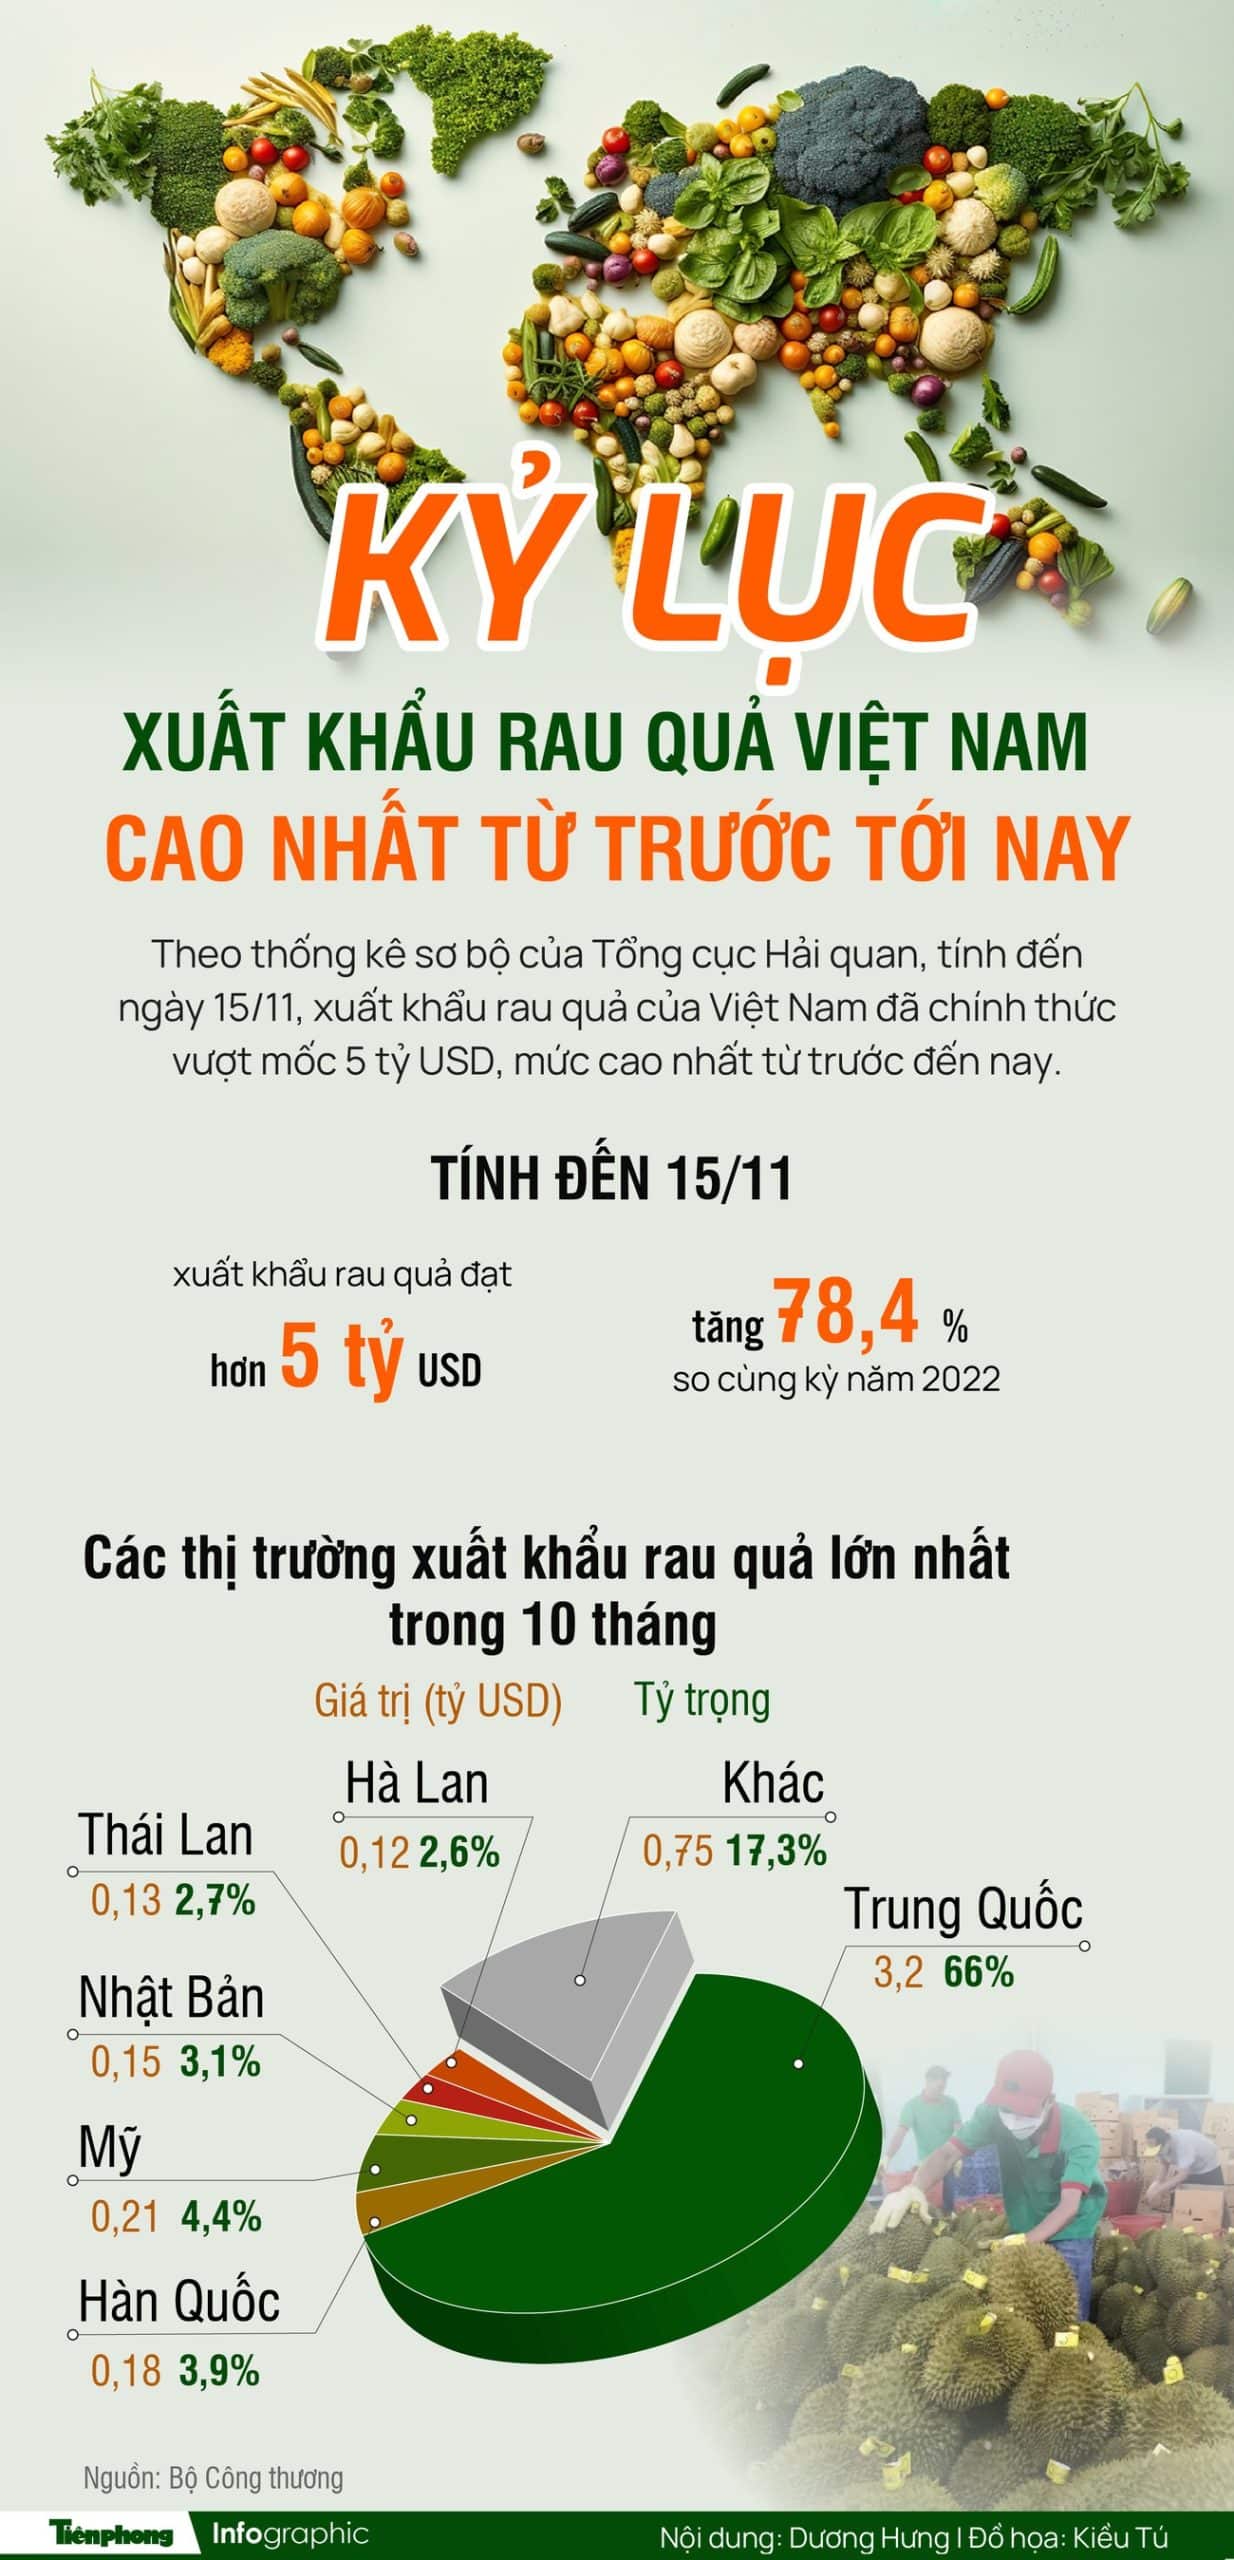 Xuất khẩu rau quả của Việt Nam đạt kỷ lục vượt mốc 5 tỷ USD 